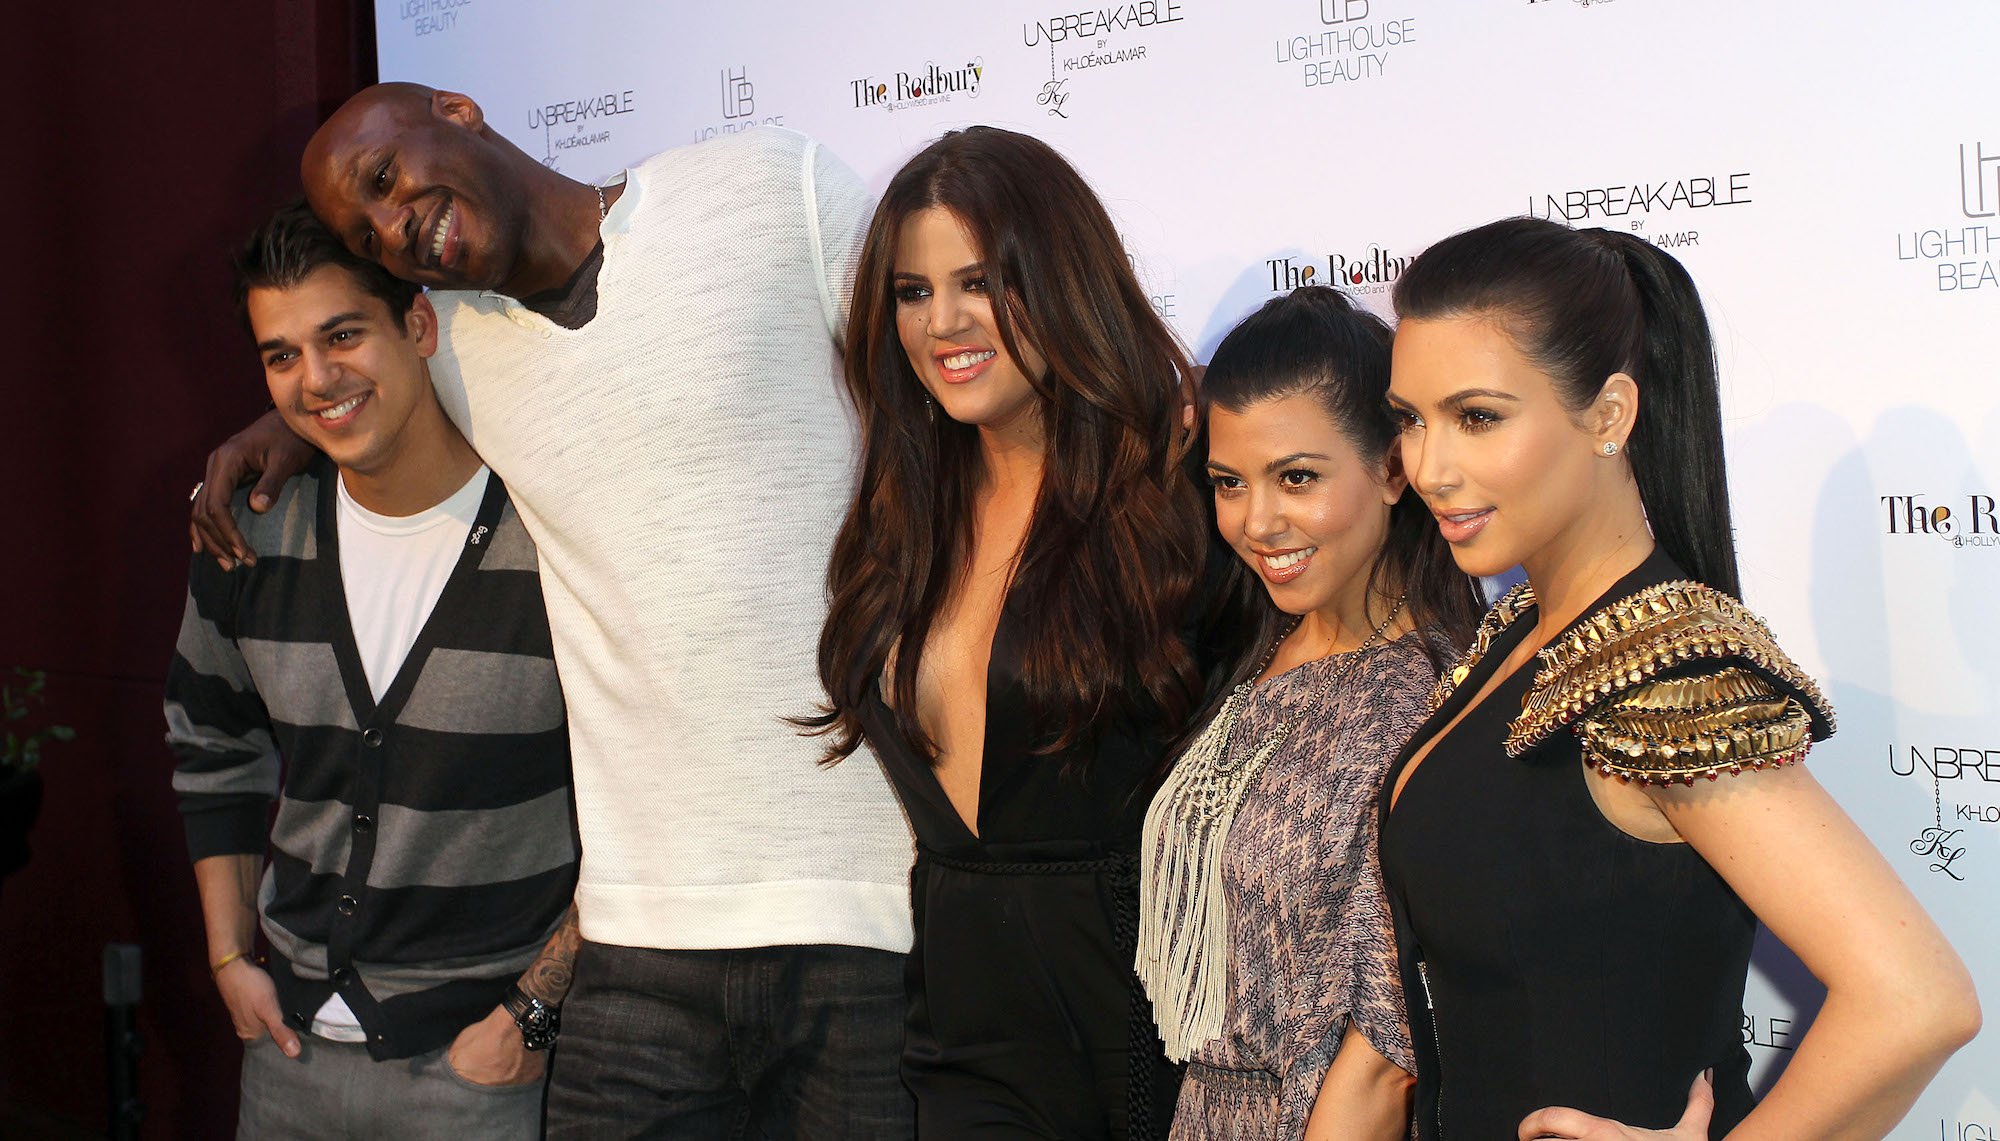 (L-R) Rob Kardashian, Lamar Odom, Khloé Kardashian, Kourtney Kardashian, Kim Kardashian